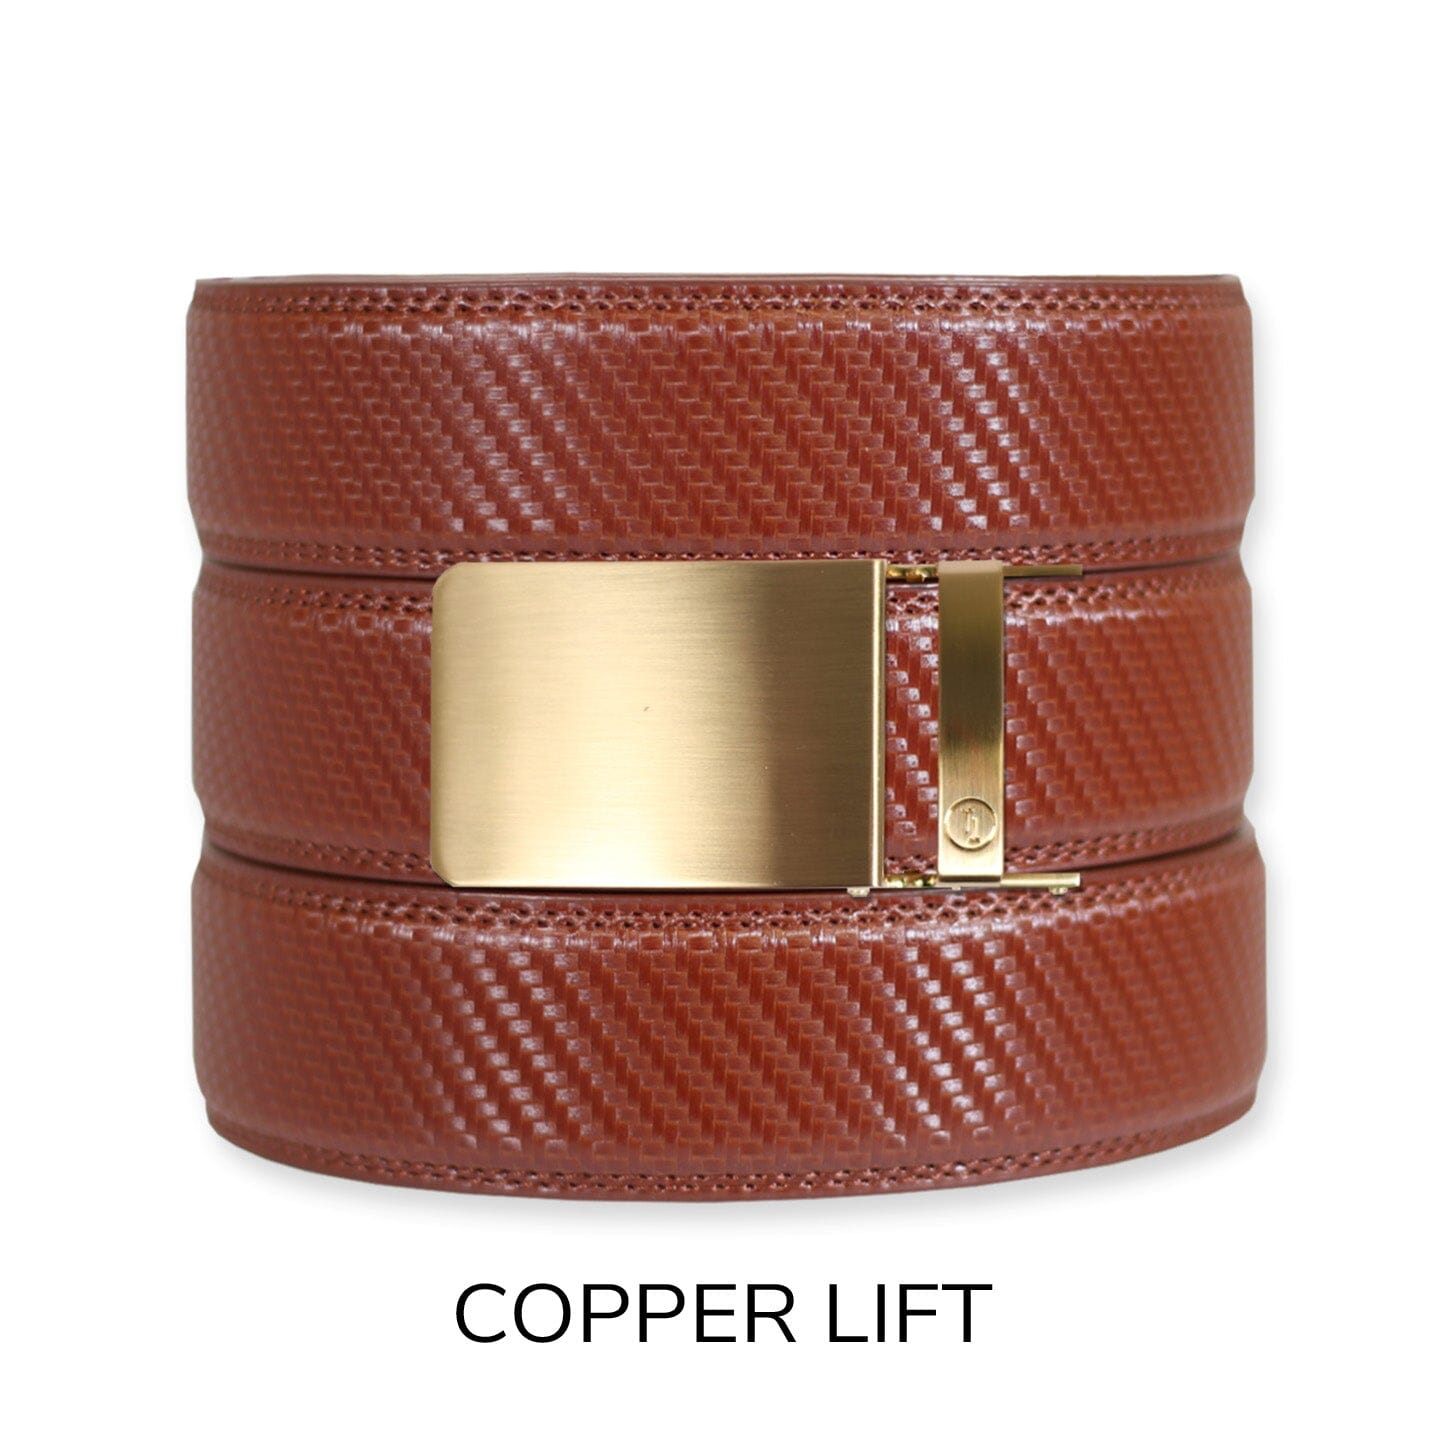 Carbon Cognac Leather Ratchet Belt & Buckle Set